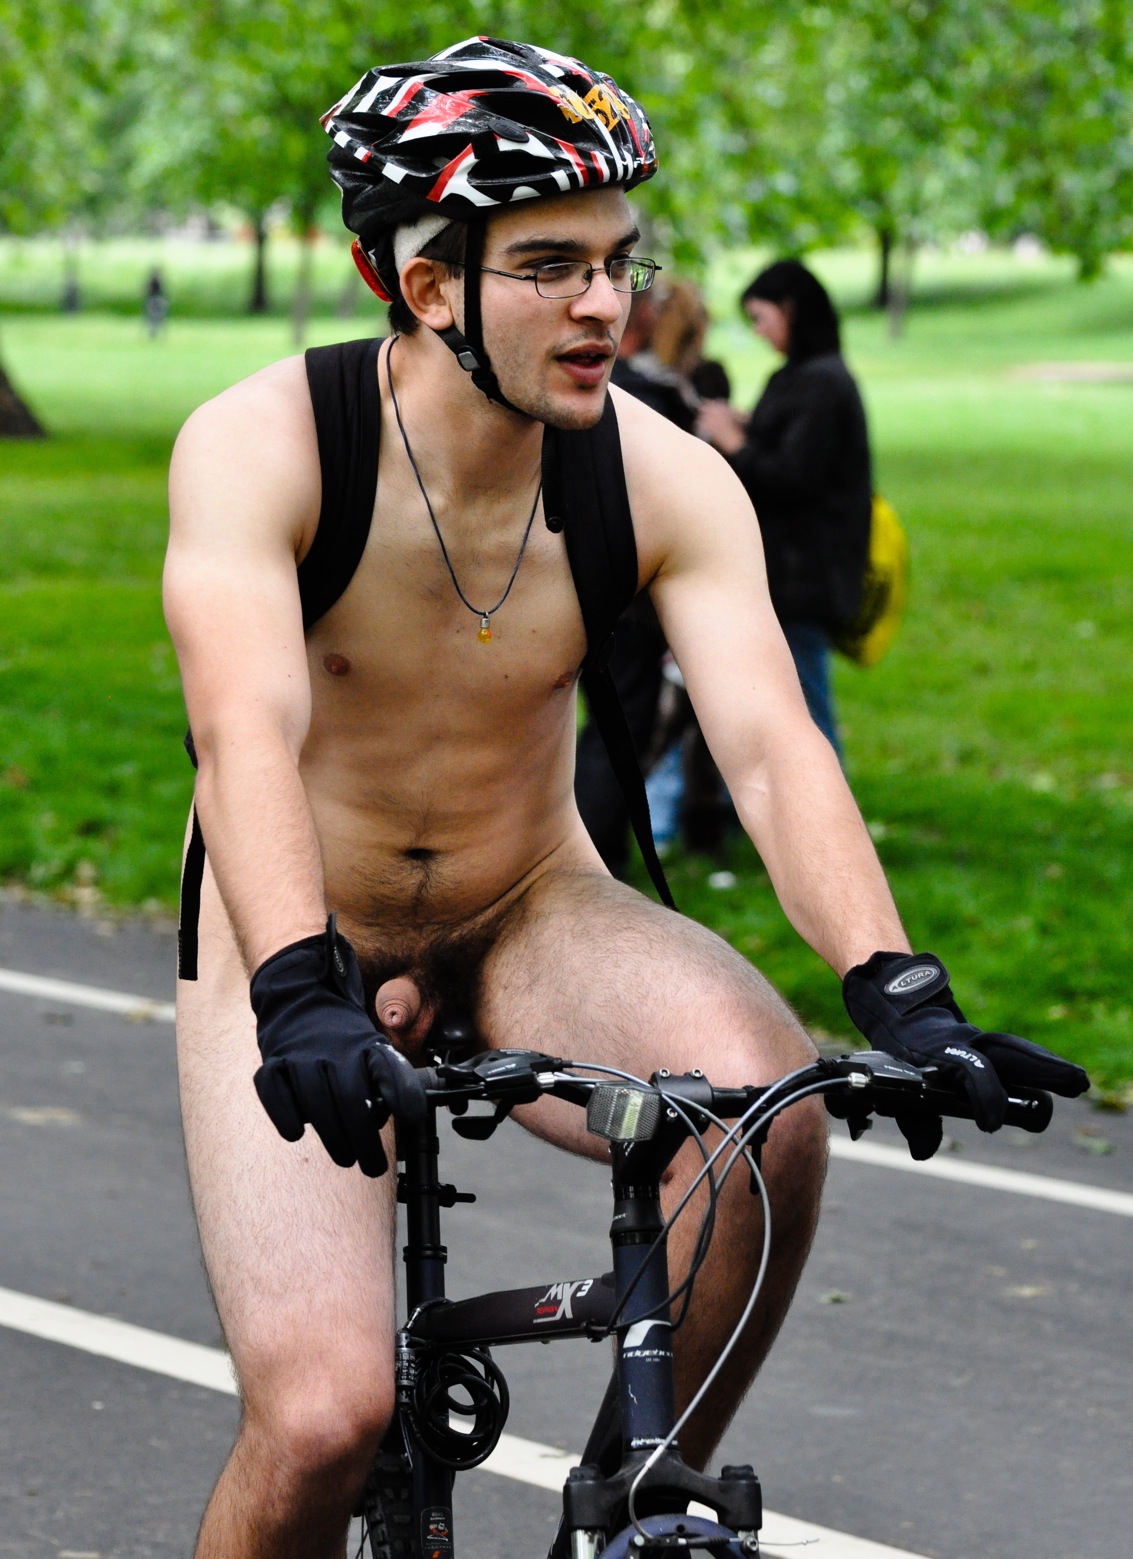 Dicks boys bike